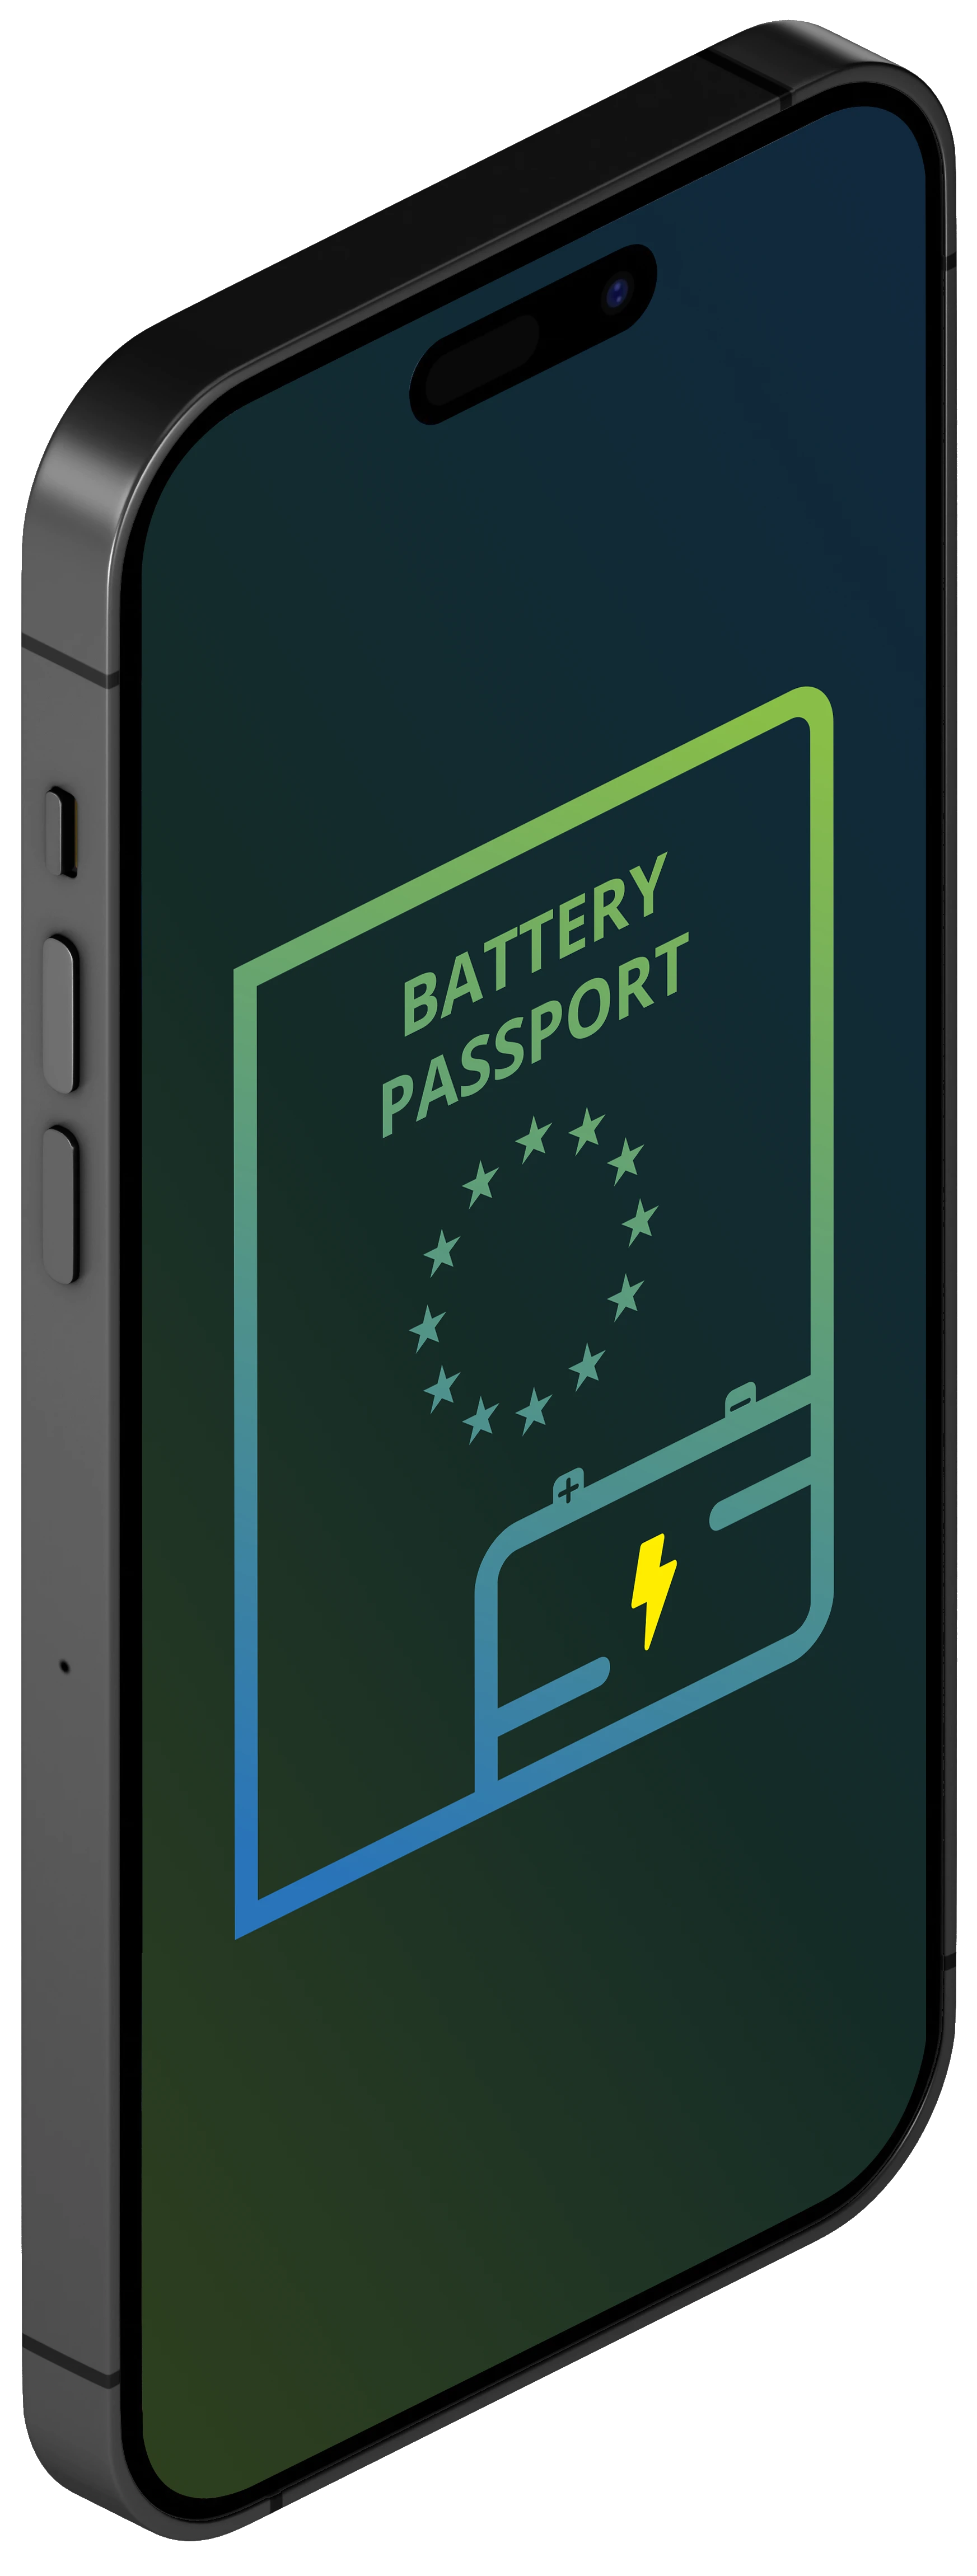 Battery Passport App